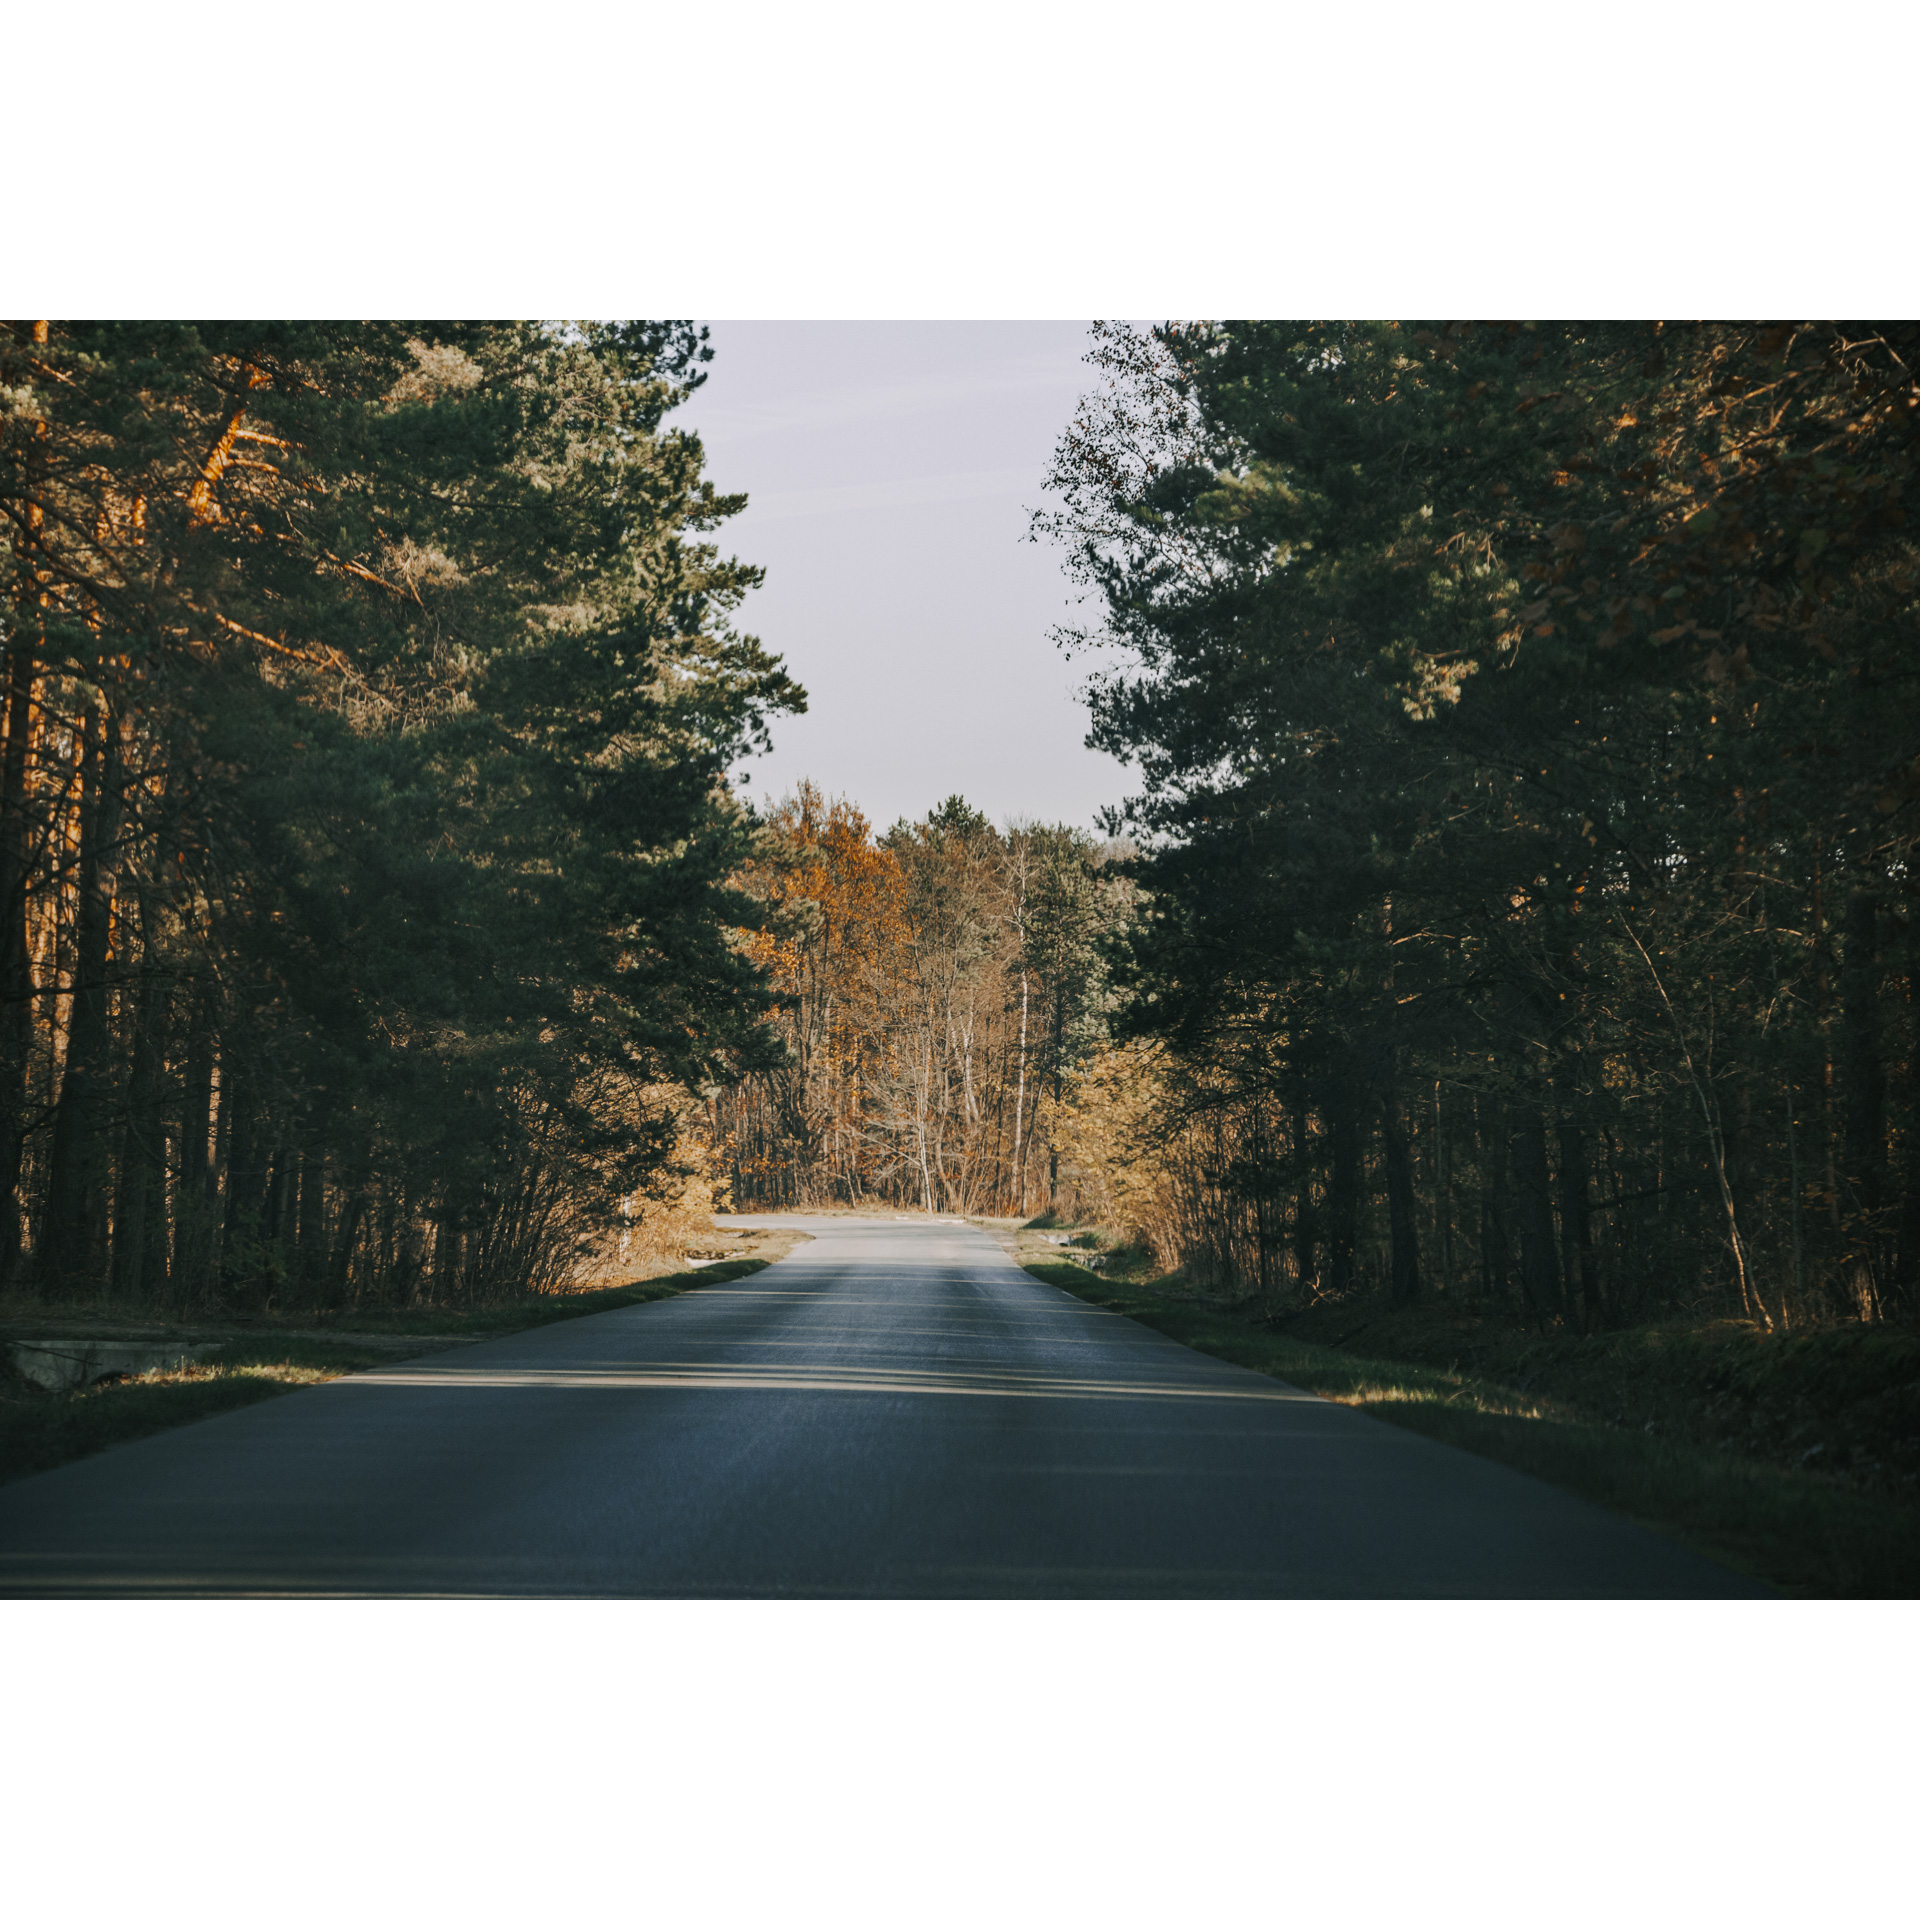 Leśna asfaltowa droga prowadząca prosto, dookoła wysokie drzewa iglaste i liściaste oświetlone słońcem